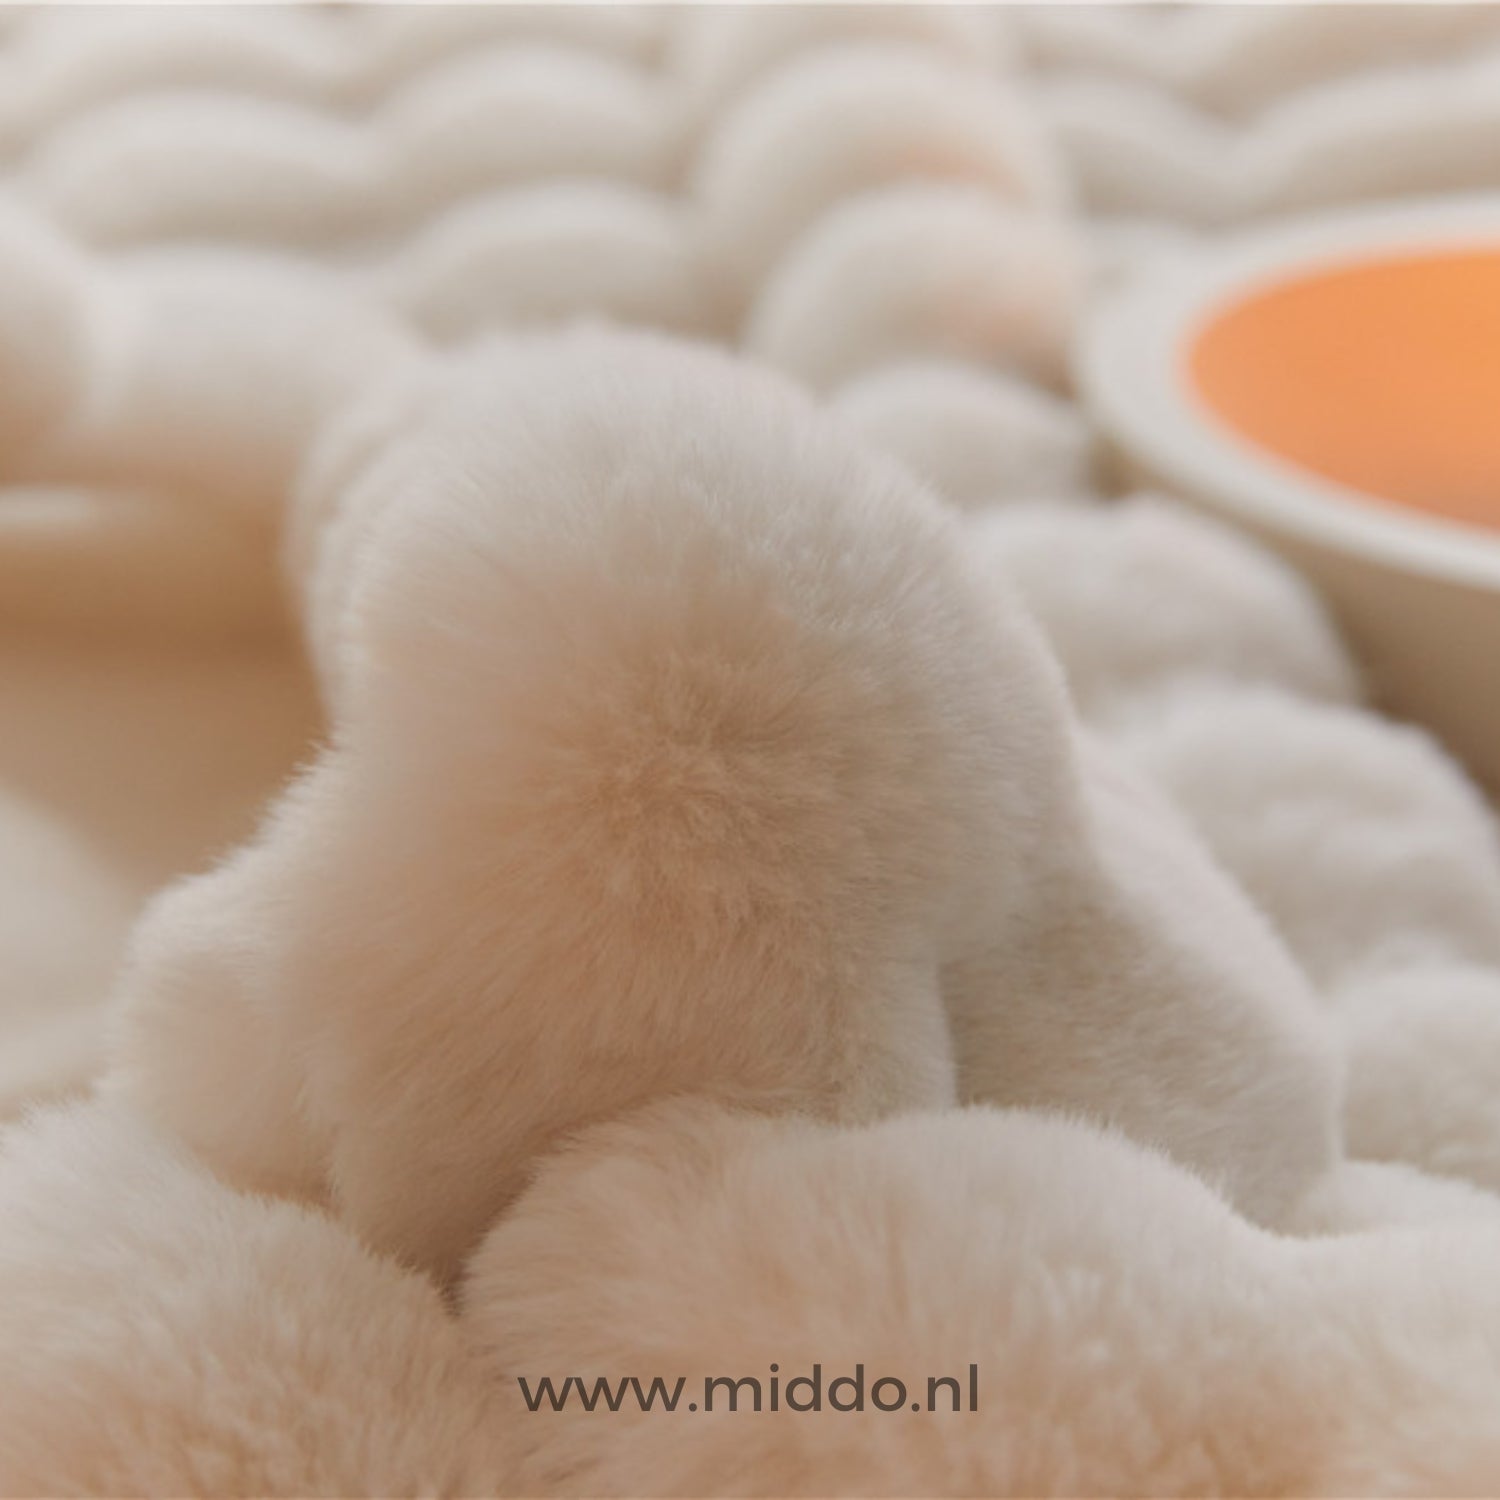 Luxe toscan moelleux : couvertures d'hiver chaudes et très épaisses pour lit et canapé ! 